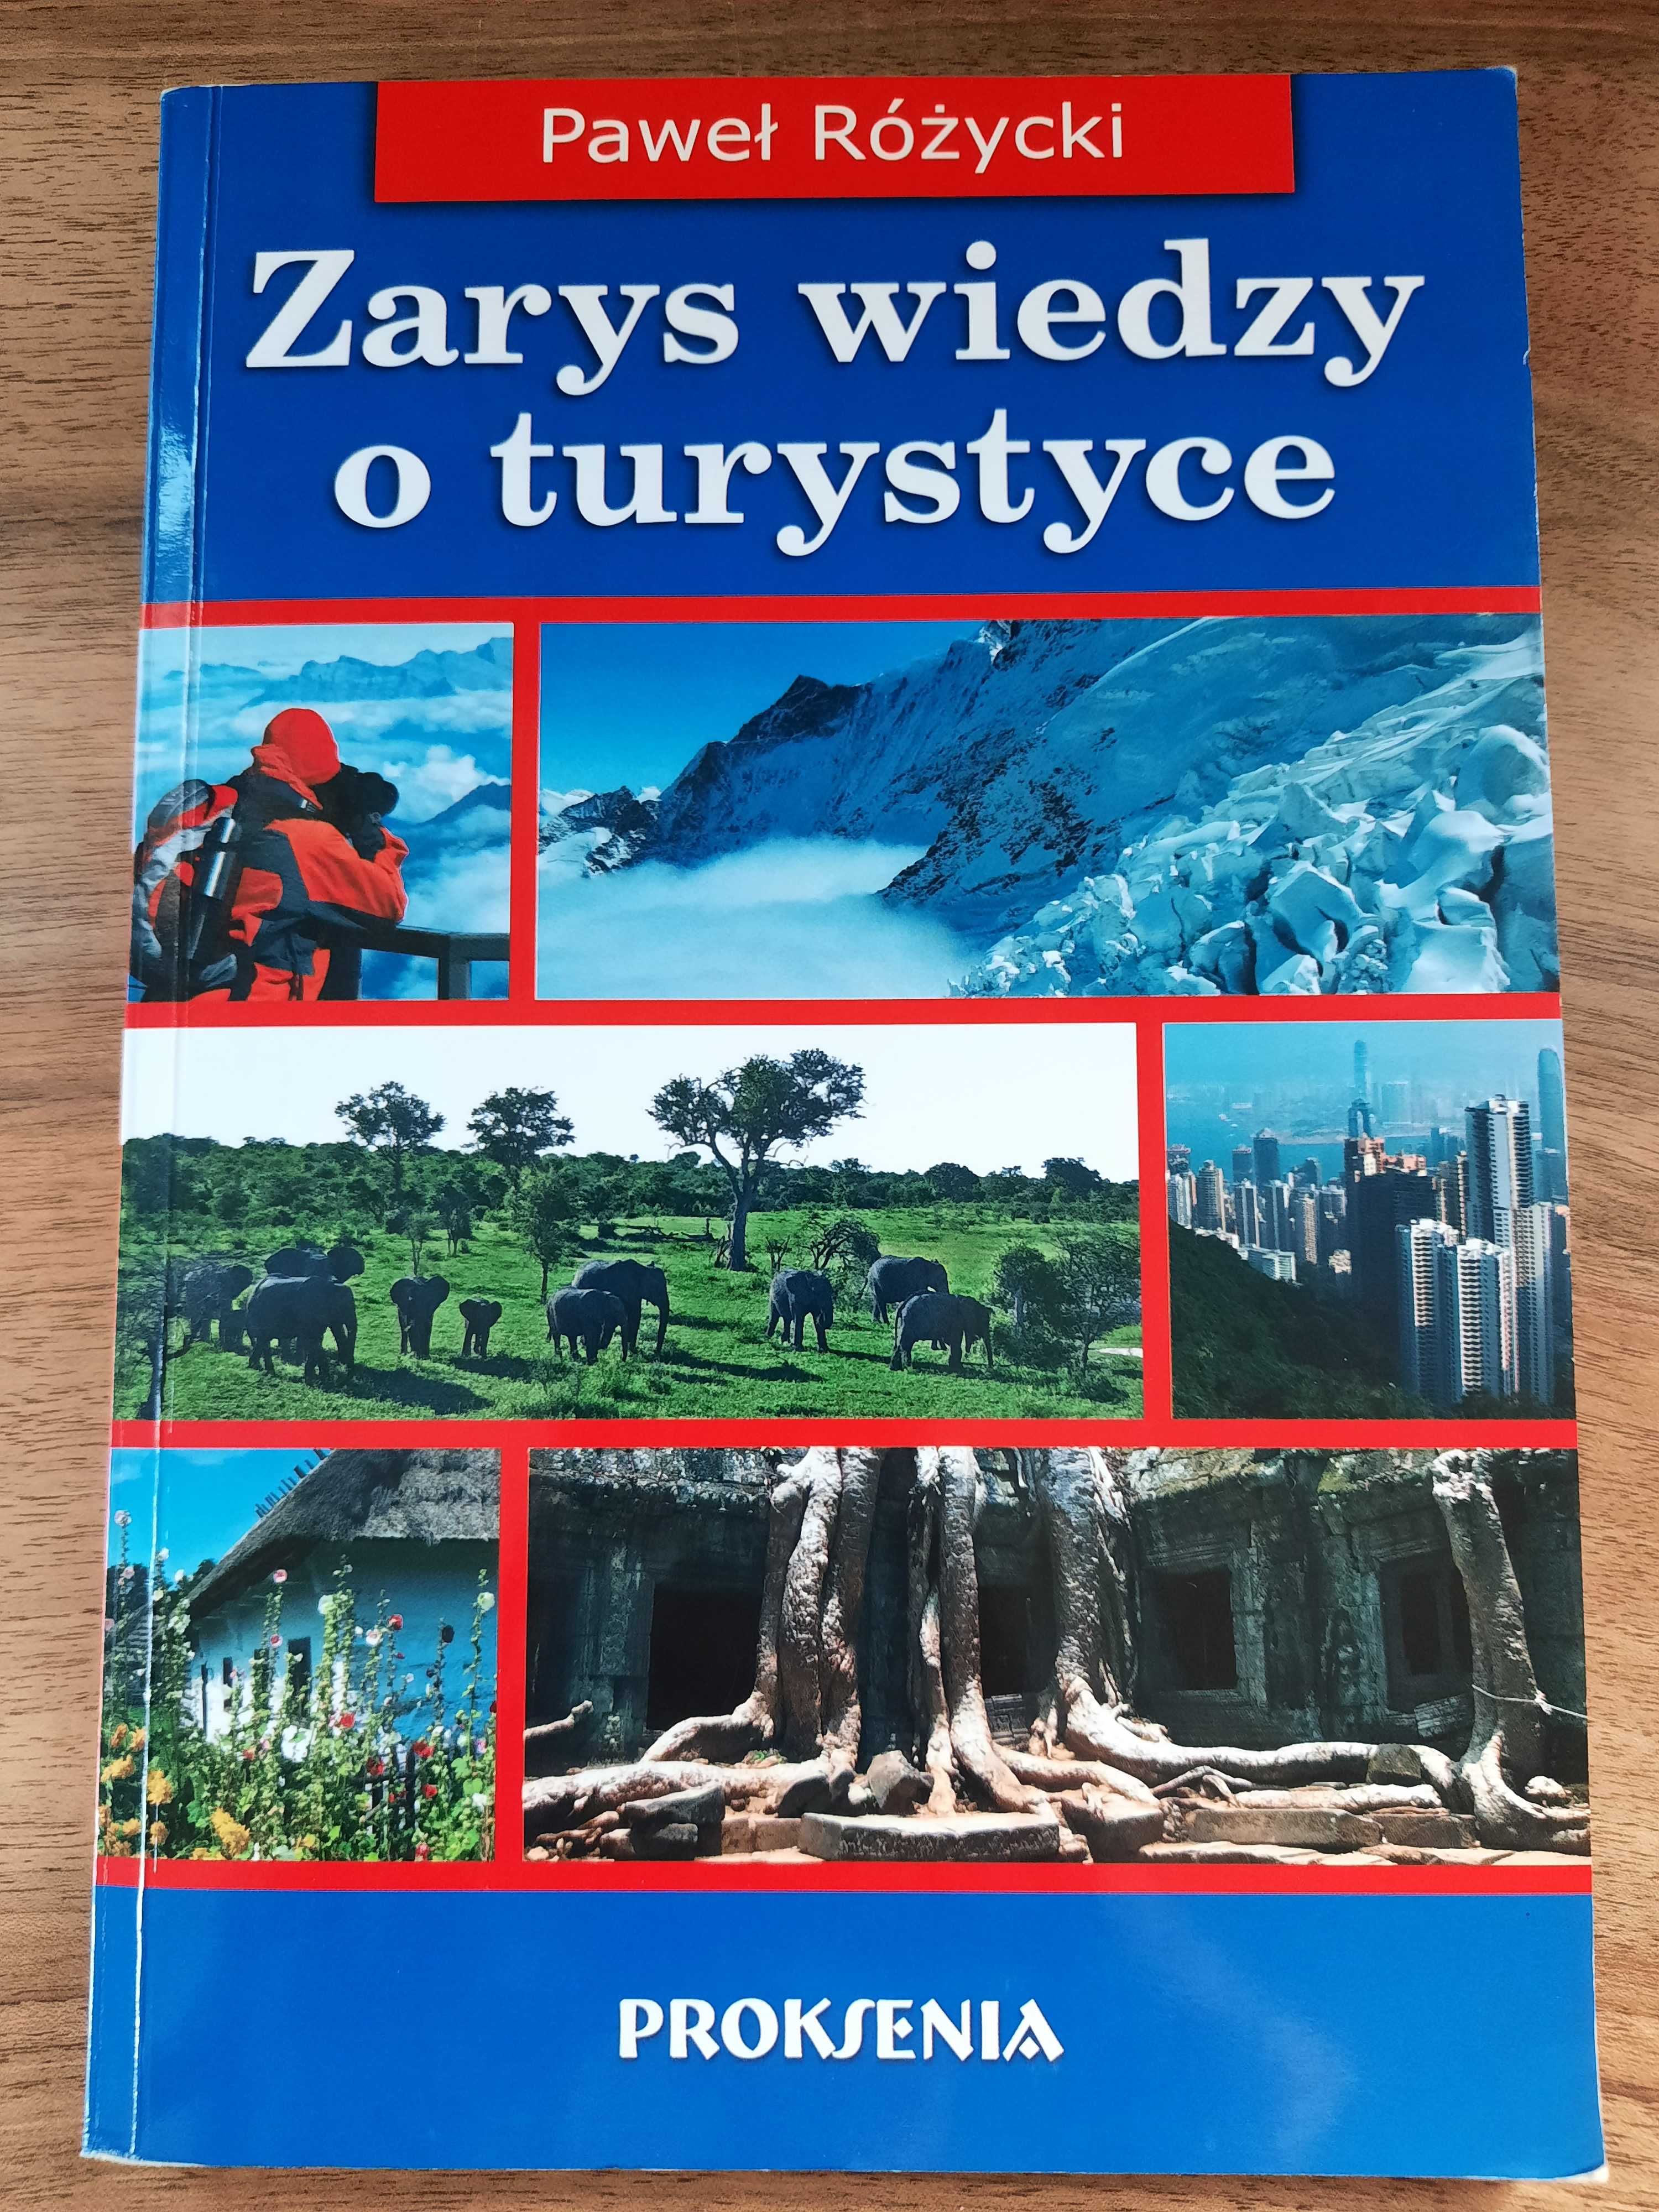 Zarys wiedzy o turystyce, Proksenia, Paweł Różycki